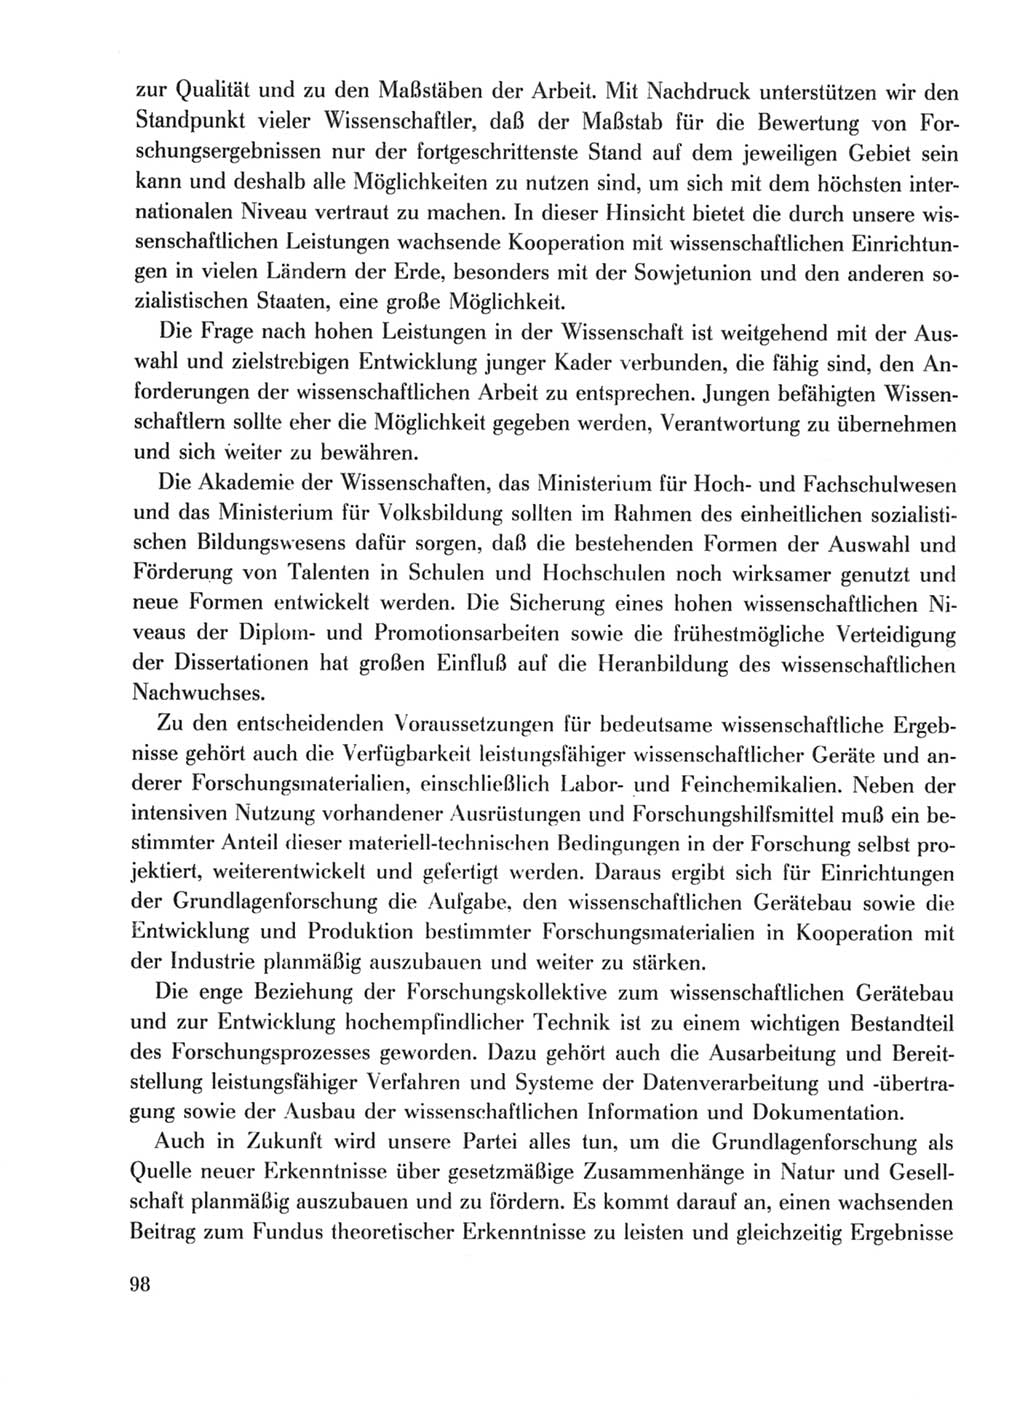 Protokoll der Verhandlungen des Ⅹ. Parteitages der Sozialistischen Einheitspartei Deutschlands (SED) [Deutsche Demokratische Republik (DDR)] 1981, Band 1, Seite 98 (Prot. Verh. Ⅹ. PT SED DDR 1981, Bd. 1, S. 98)